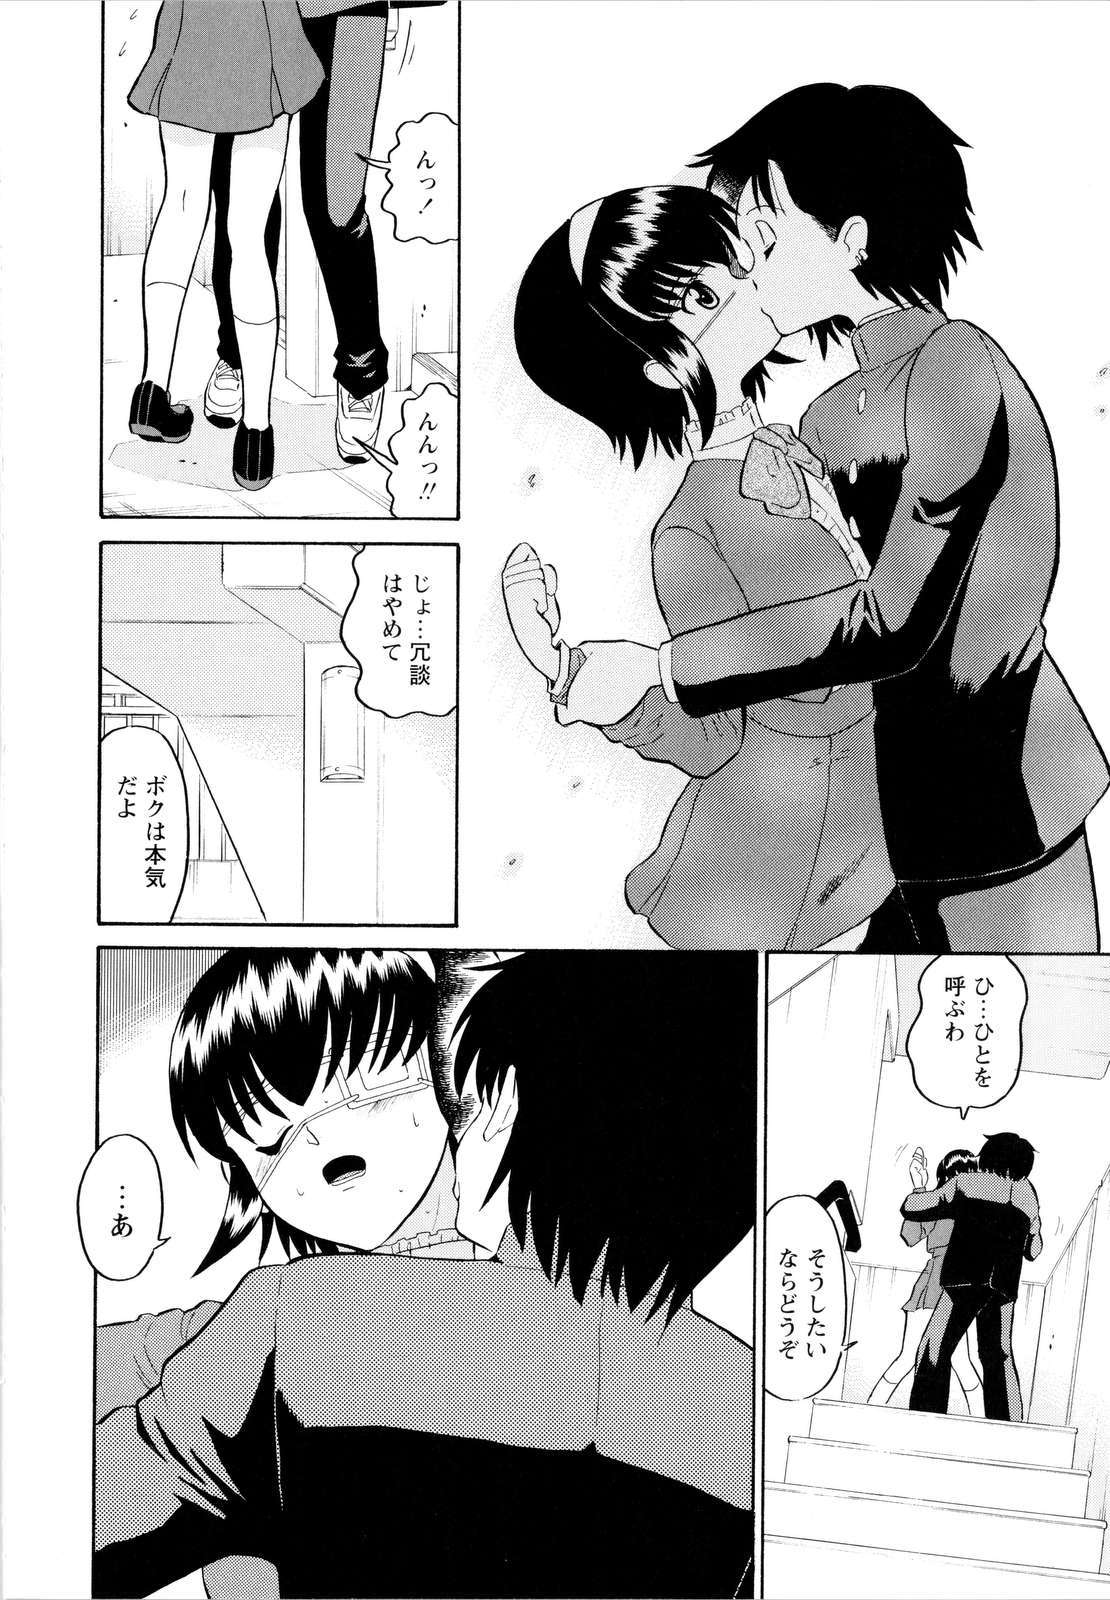 [Dozamura] Haruka 69 Vol.2 page 19 full